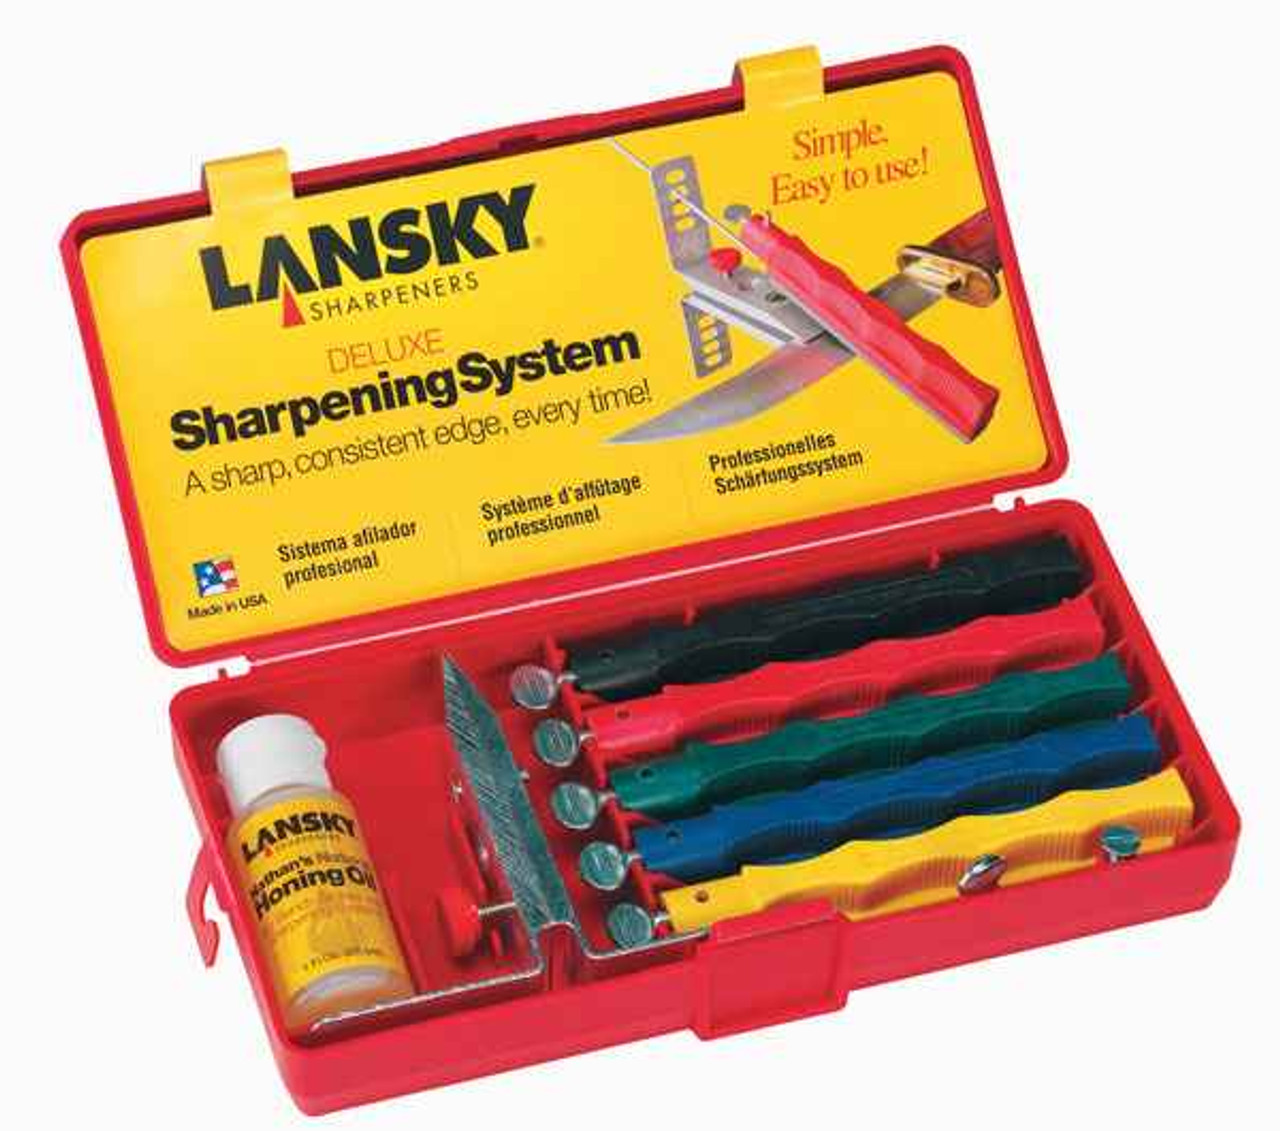 Lansky Deluxe Sharpening Kit Review